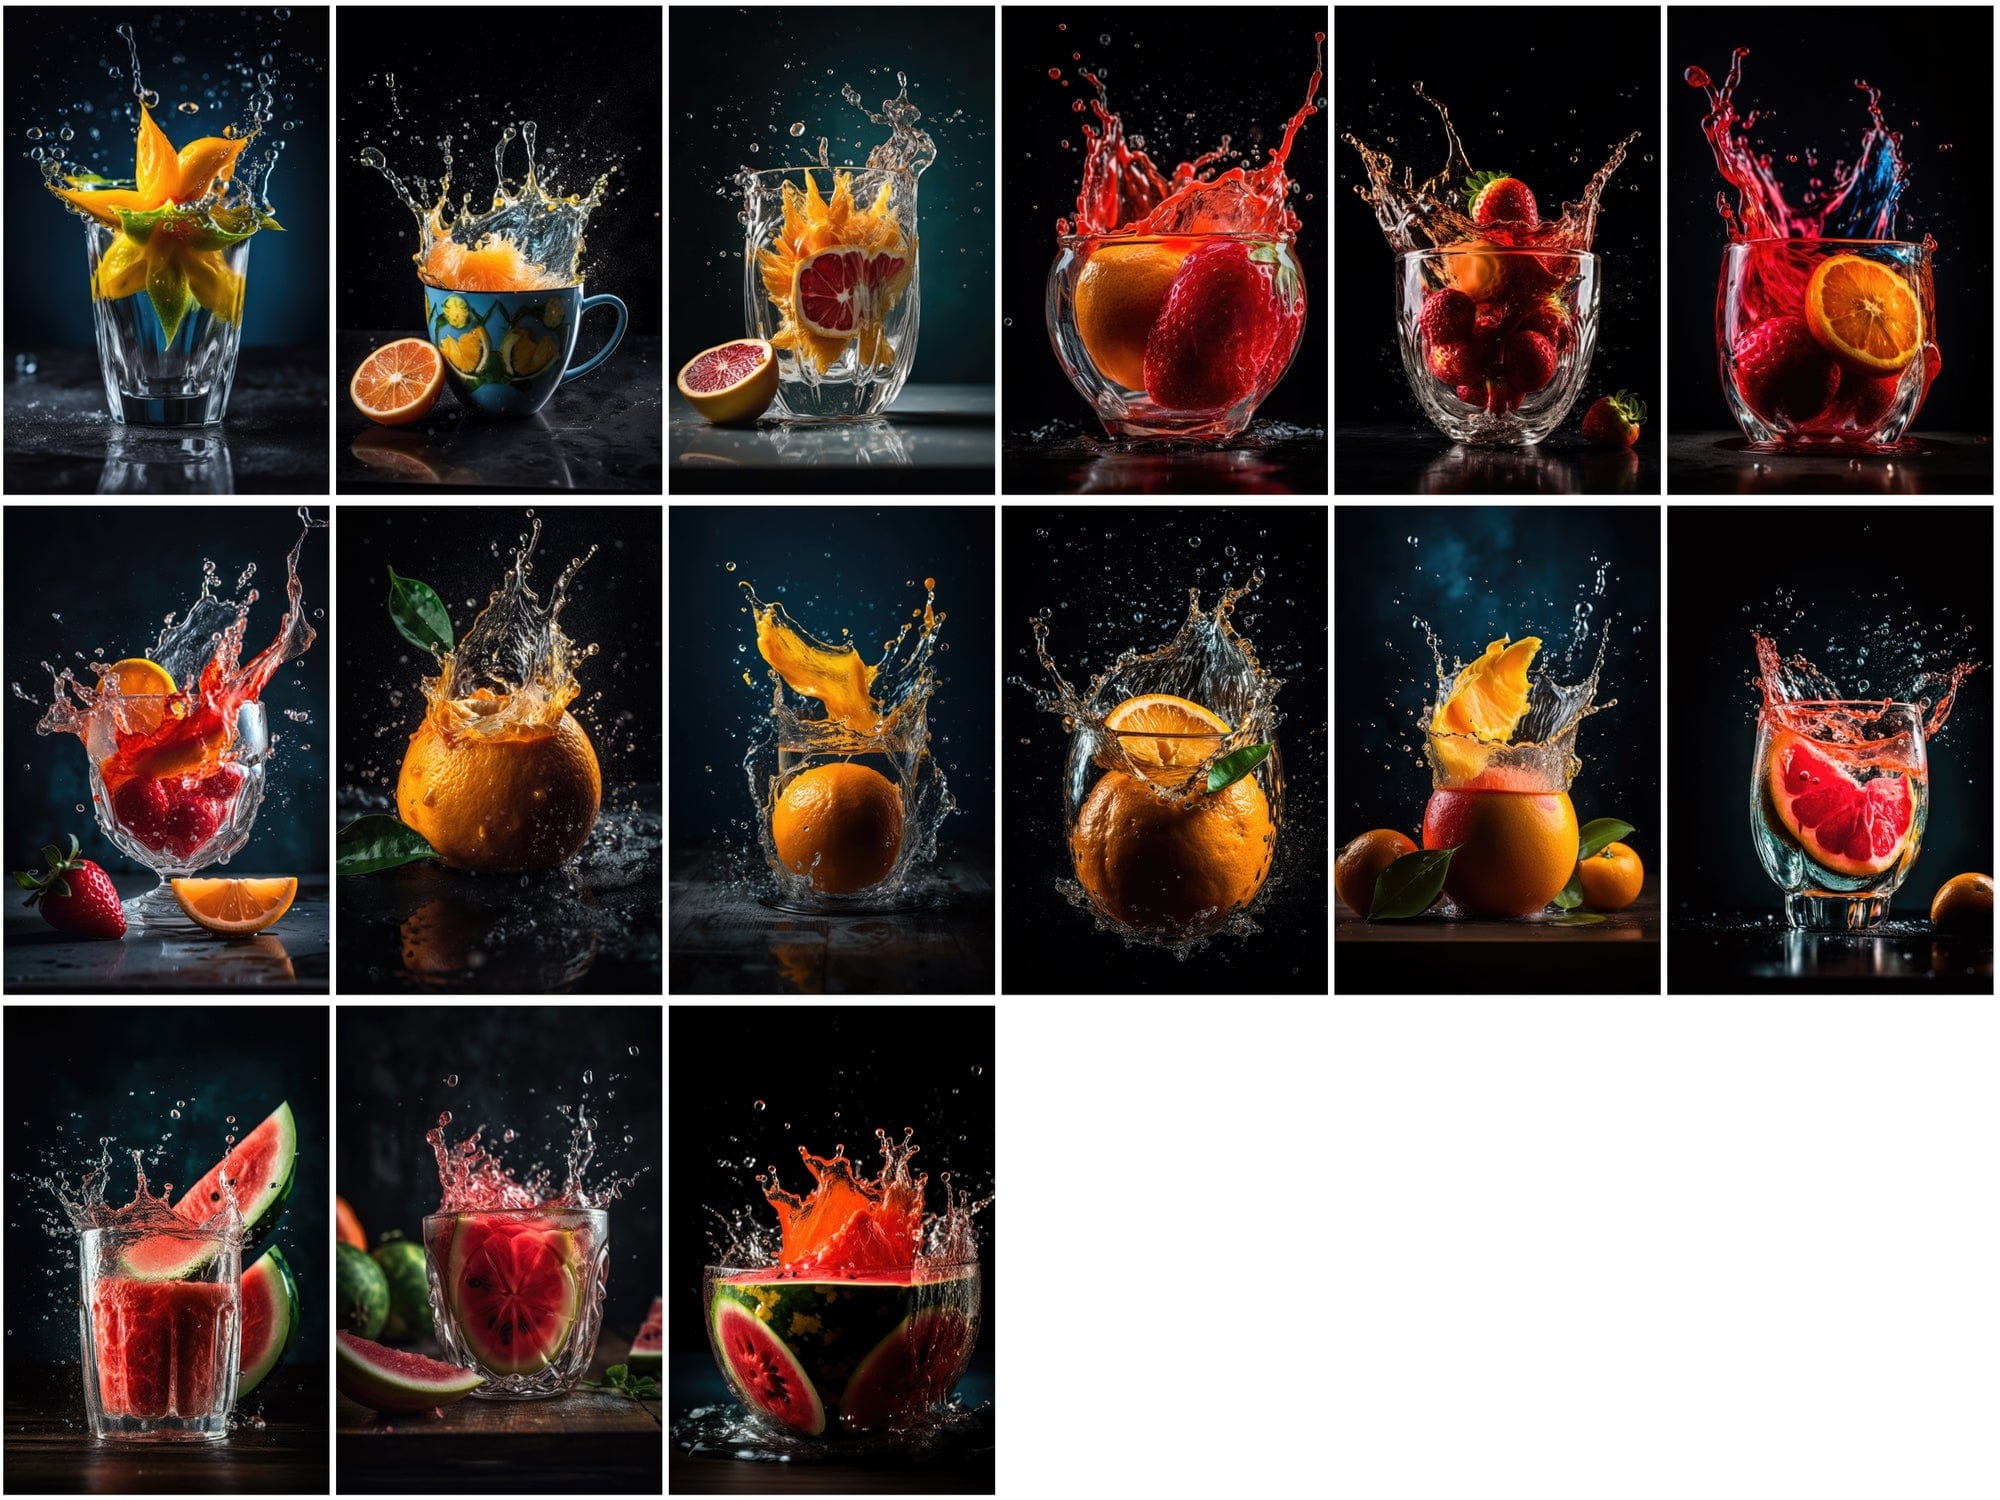 195 Fruit & Water Splash PNG Images: High-Resolution, Commercial License Included Digital Download Sumobundle